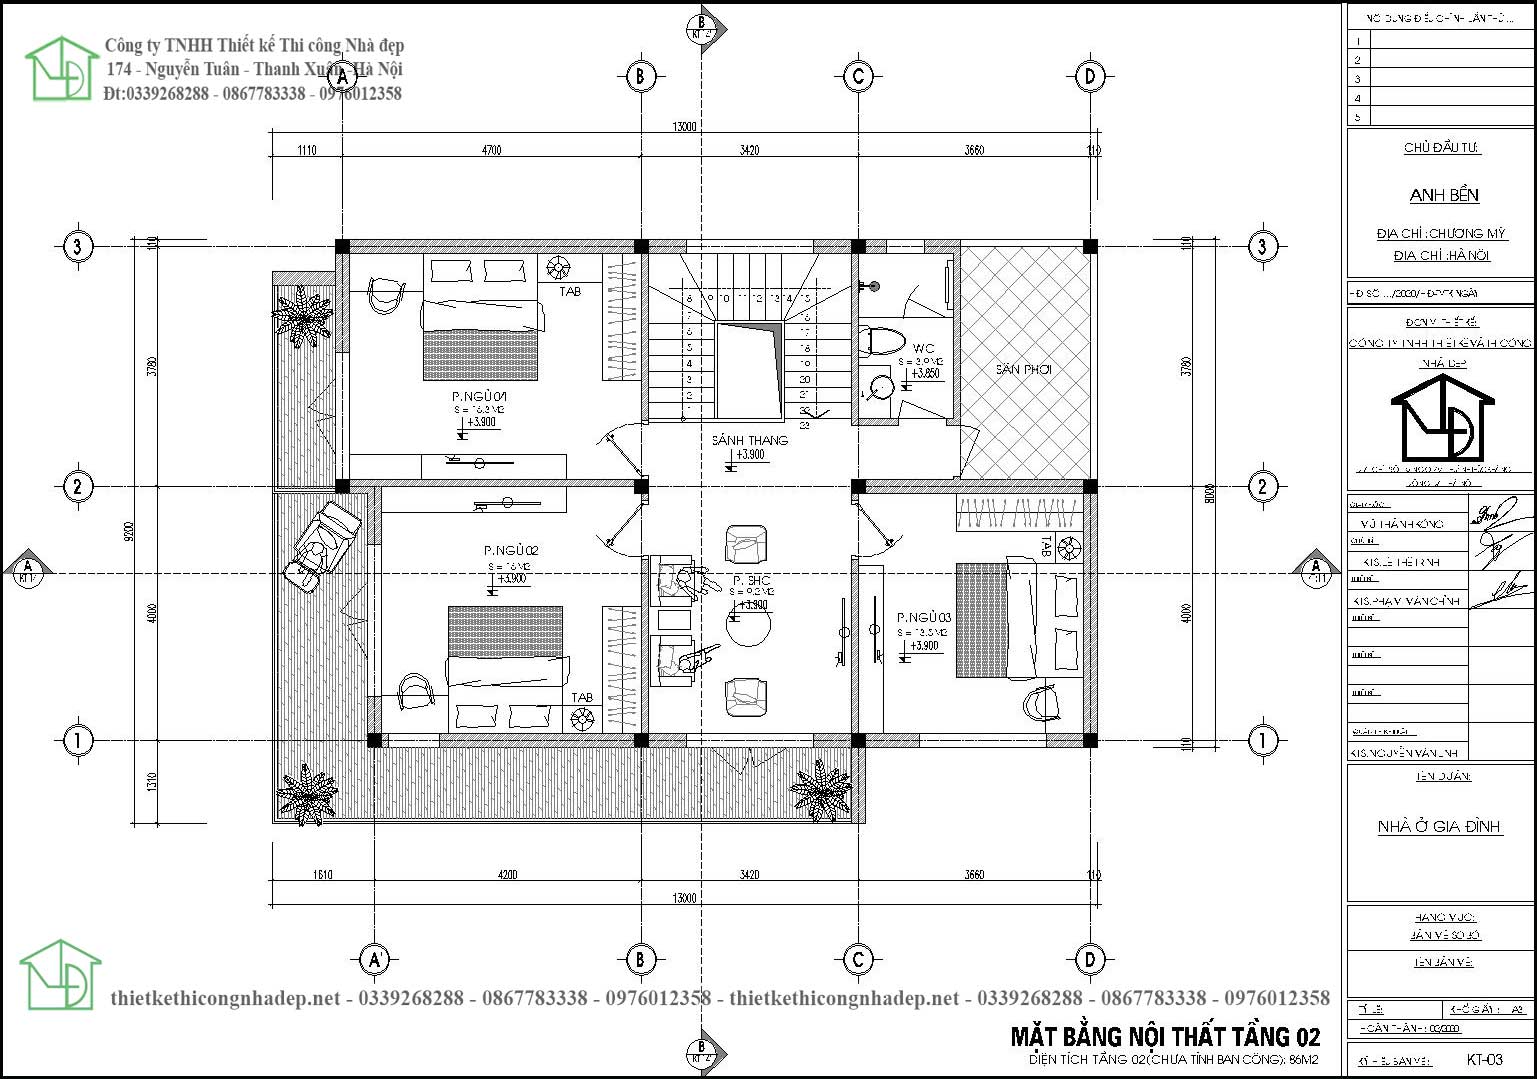 Mặt bằng bố trí nội thất tầng 2 biệt thự 2 tầng mái thái tại Chương Mỹ Hà Nội NDBT2T97